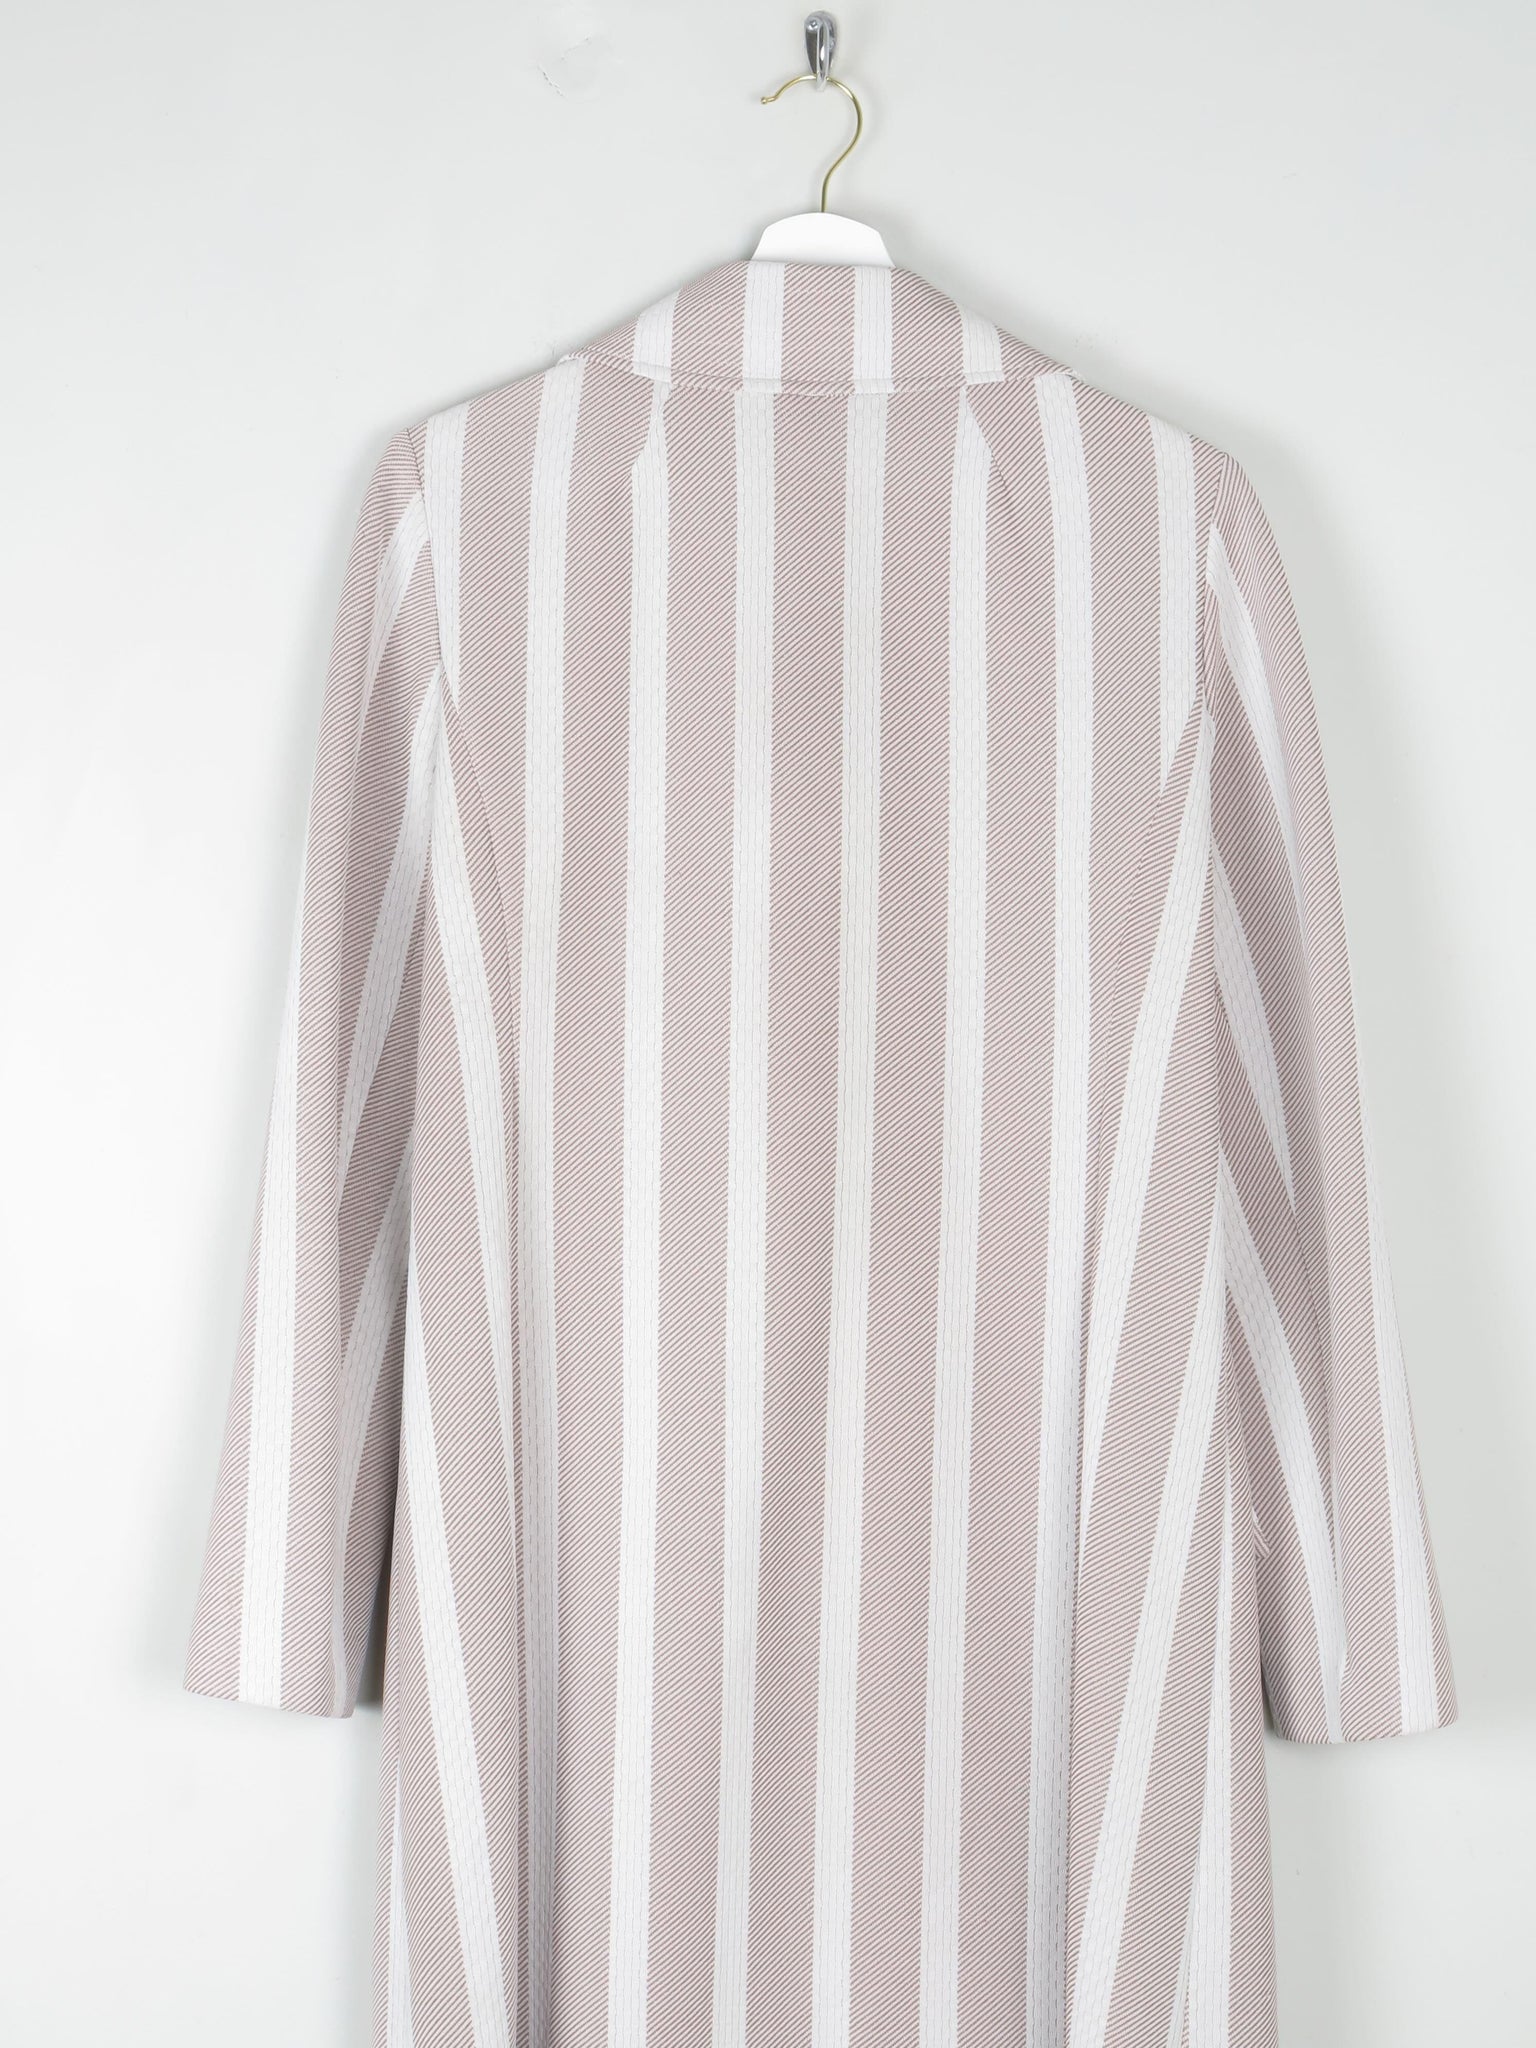 Women's Vintage Striped Crimpline Light Coat 10/12 - The Harlequin